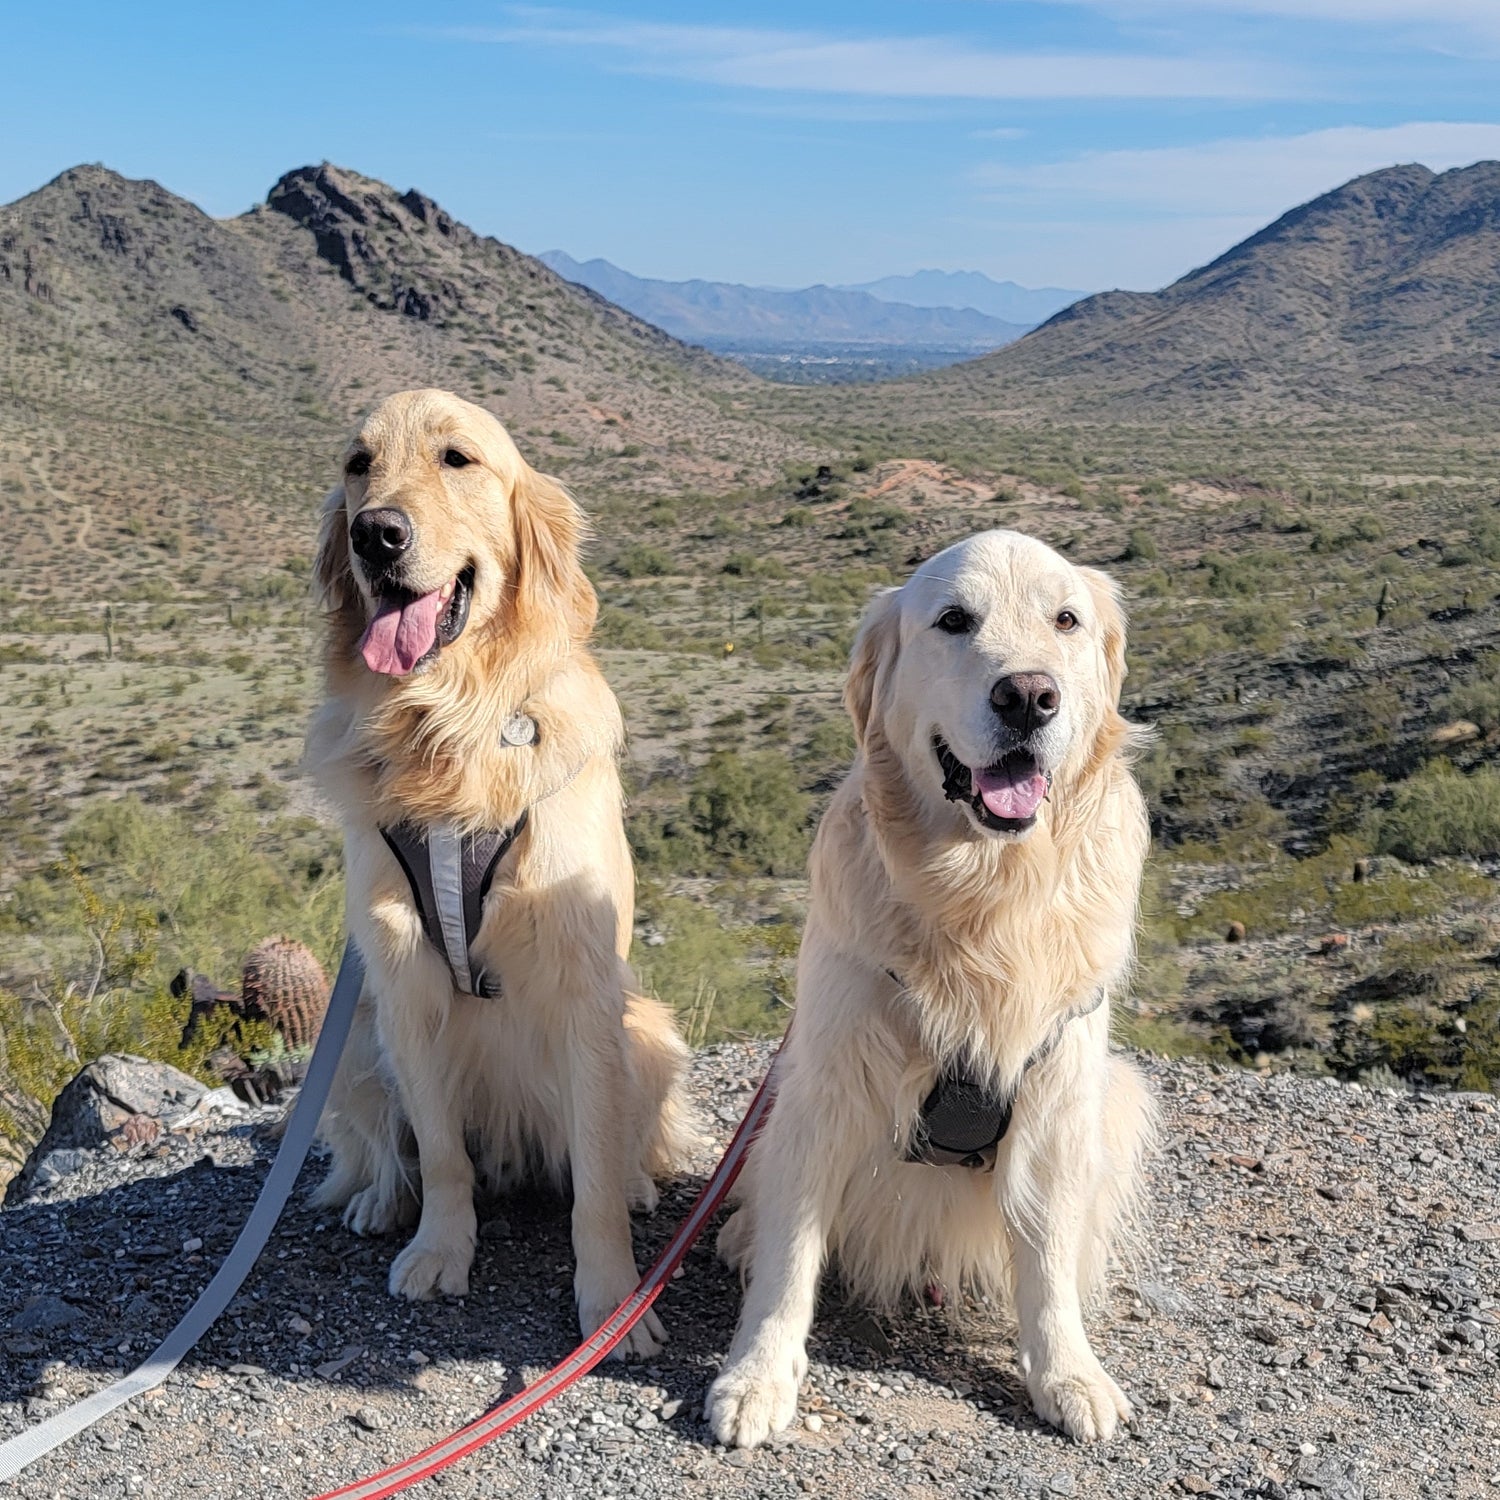 Two golden retrievers in the desert